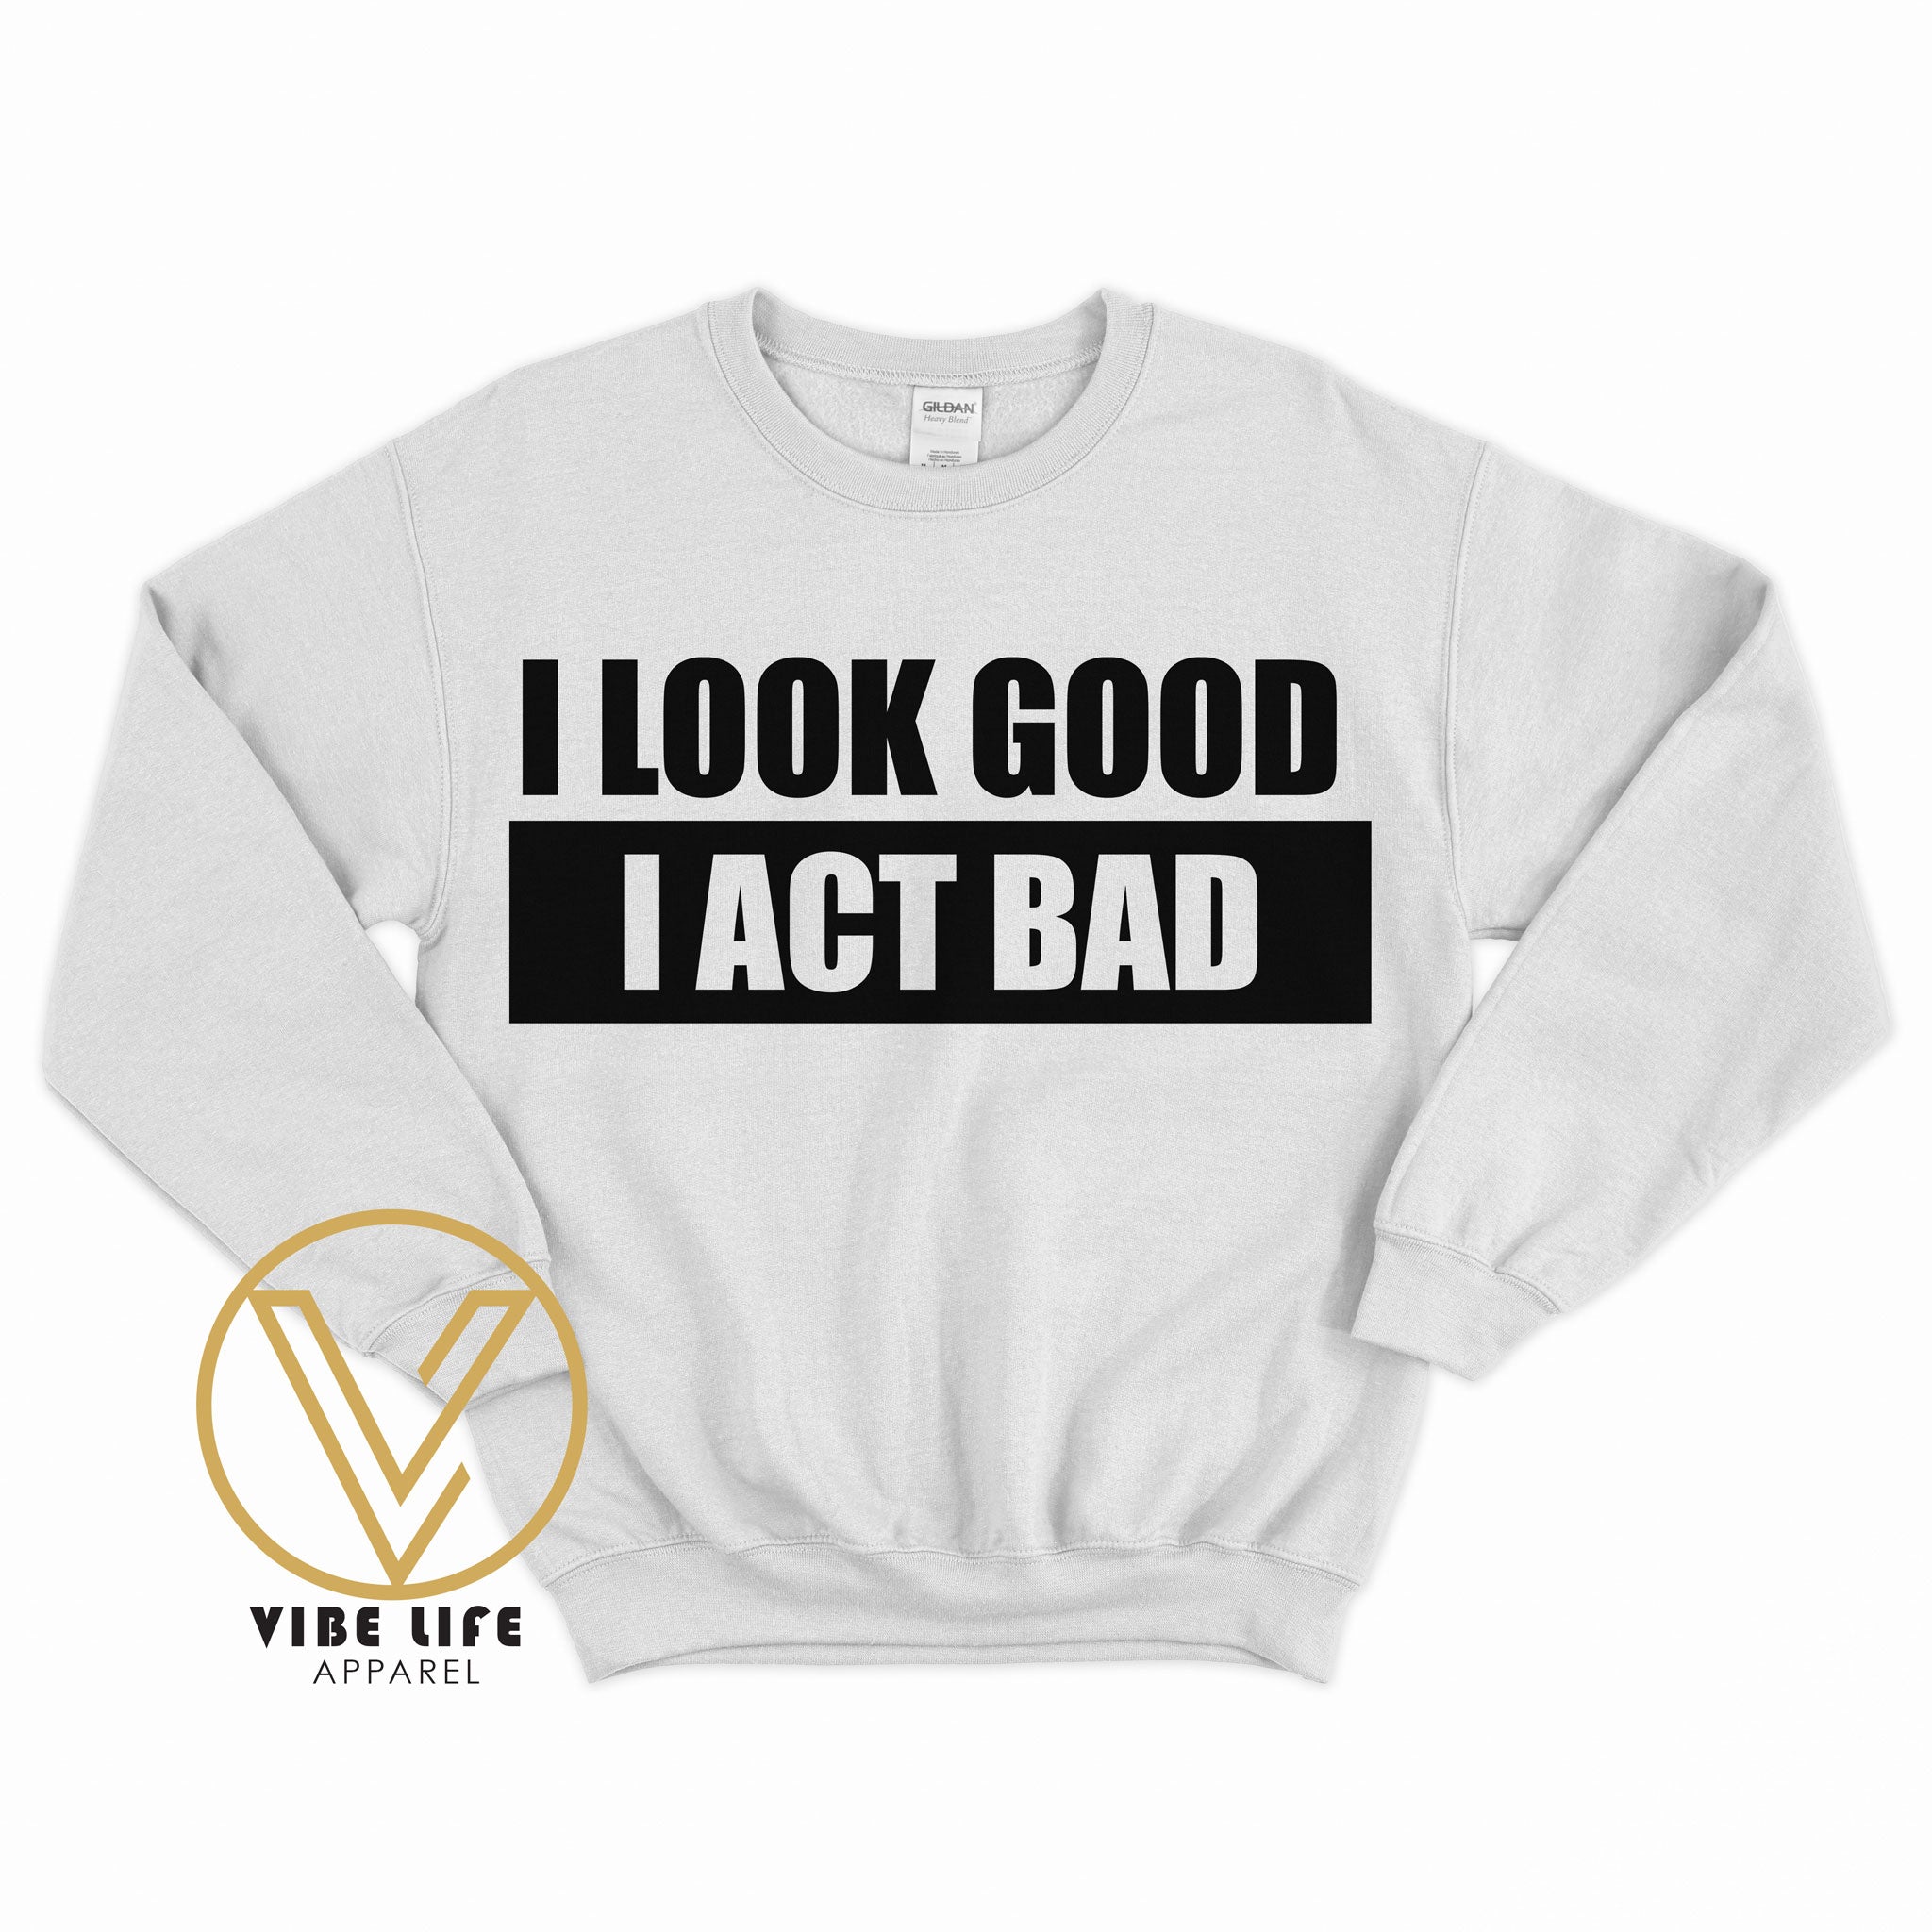 I Look Good, I Act Bad - Sweatshirt